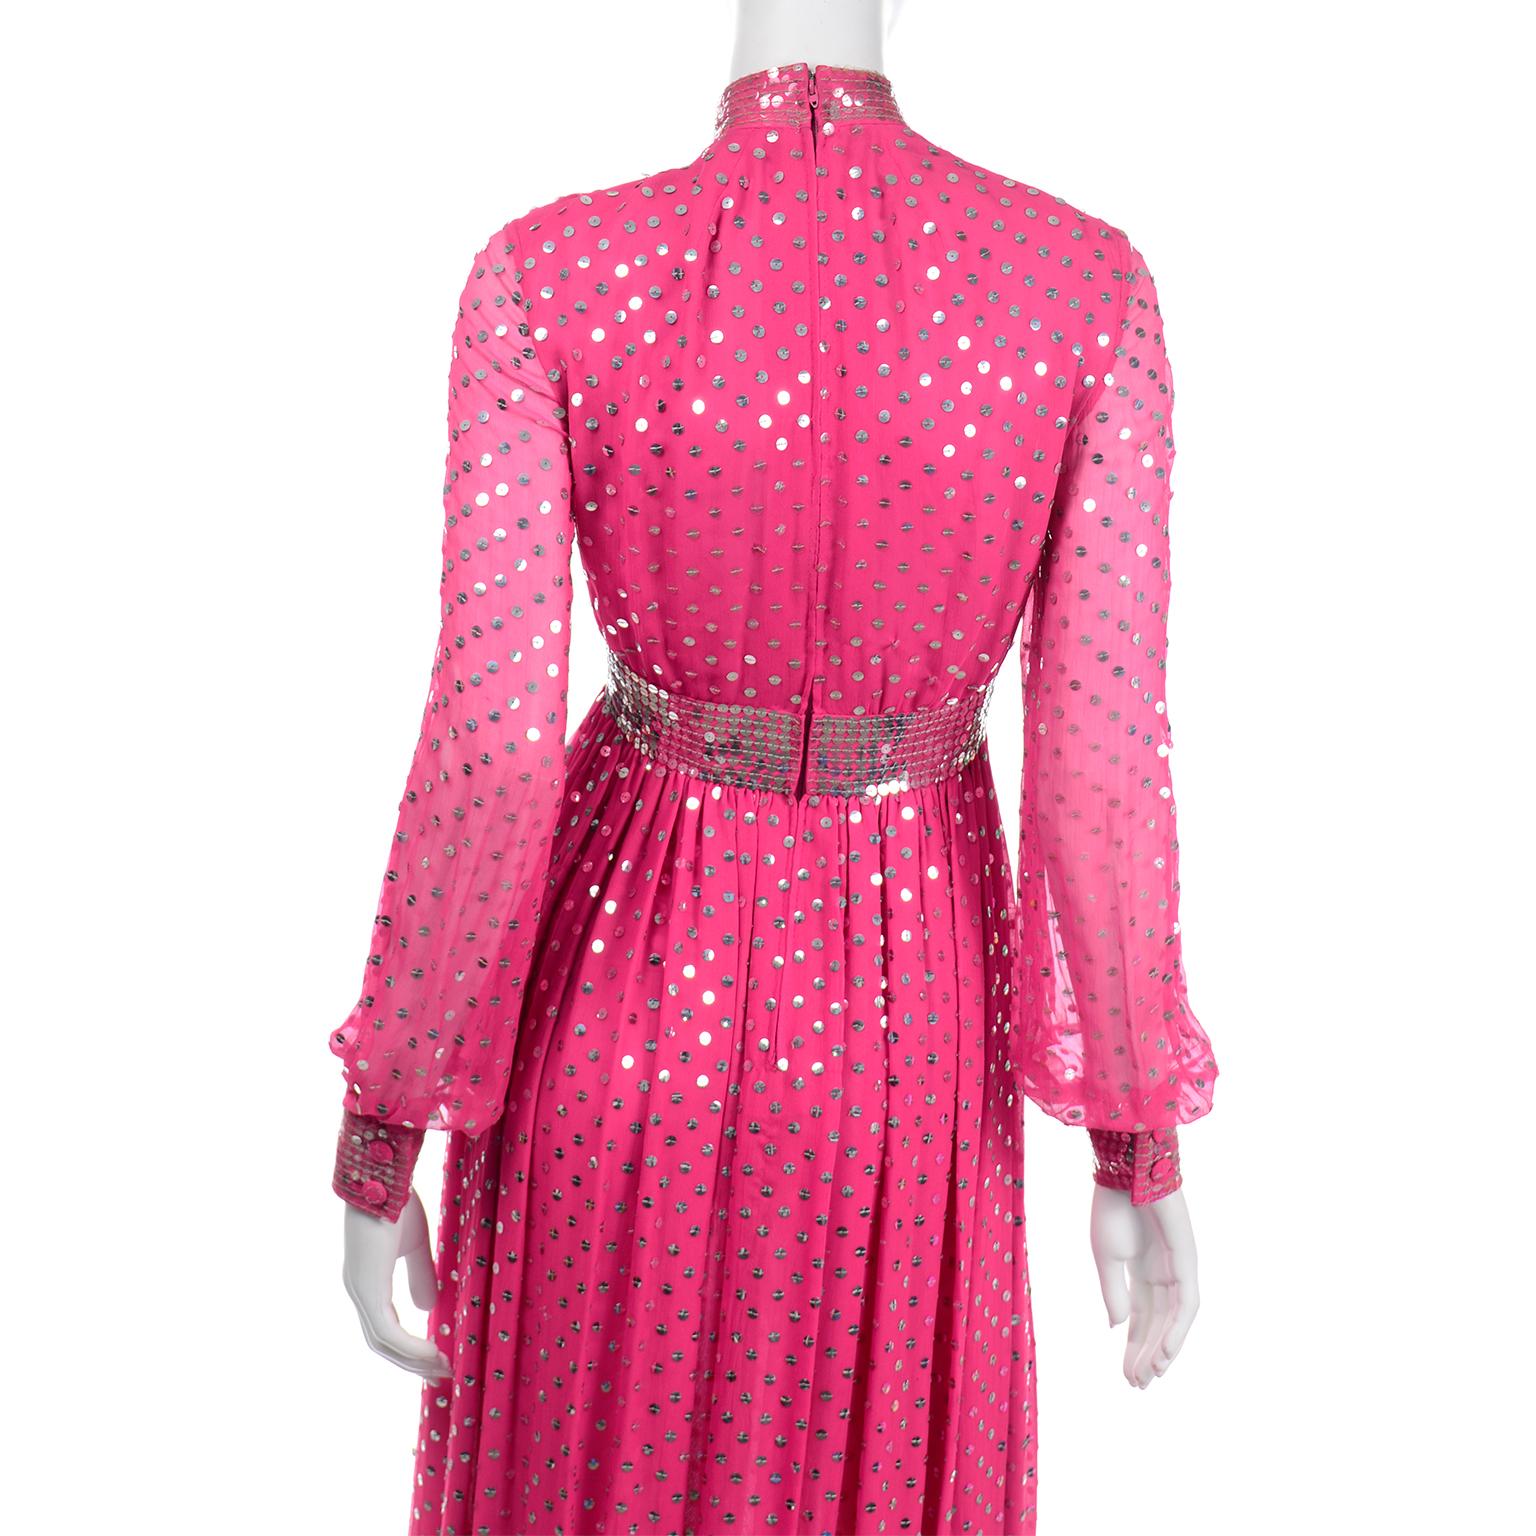 Norman Norell Rosa Vintage-Seidenkleid mit silbernen & durchsichtigen Pailletten und durchsichtigen Ärmeln  2